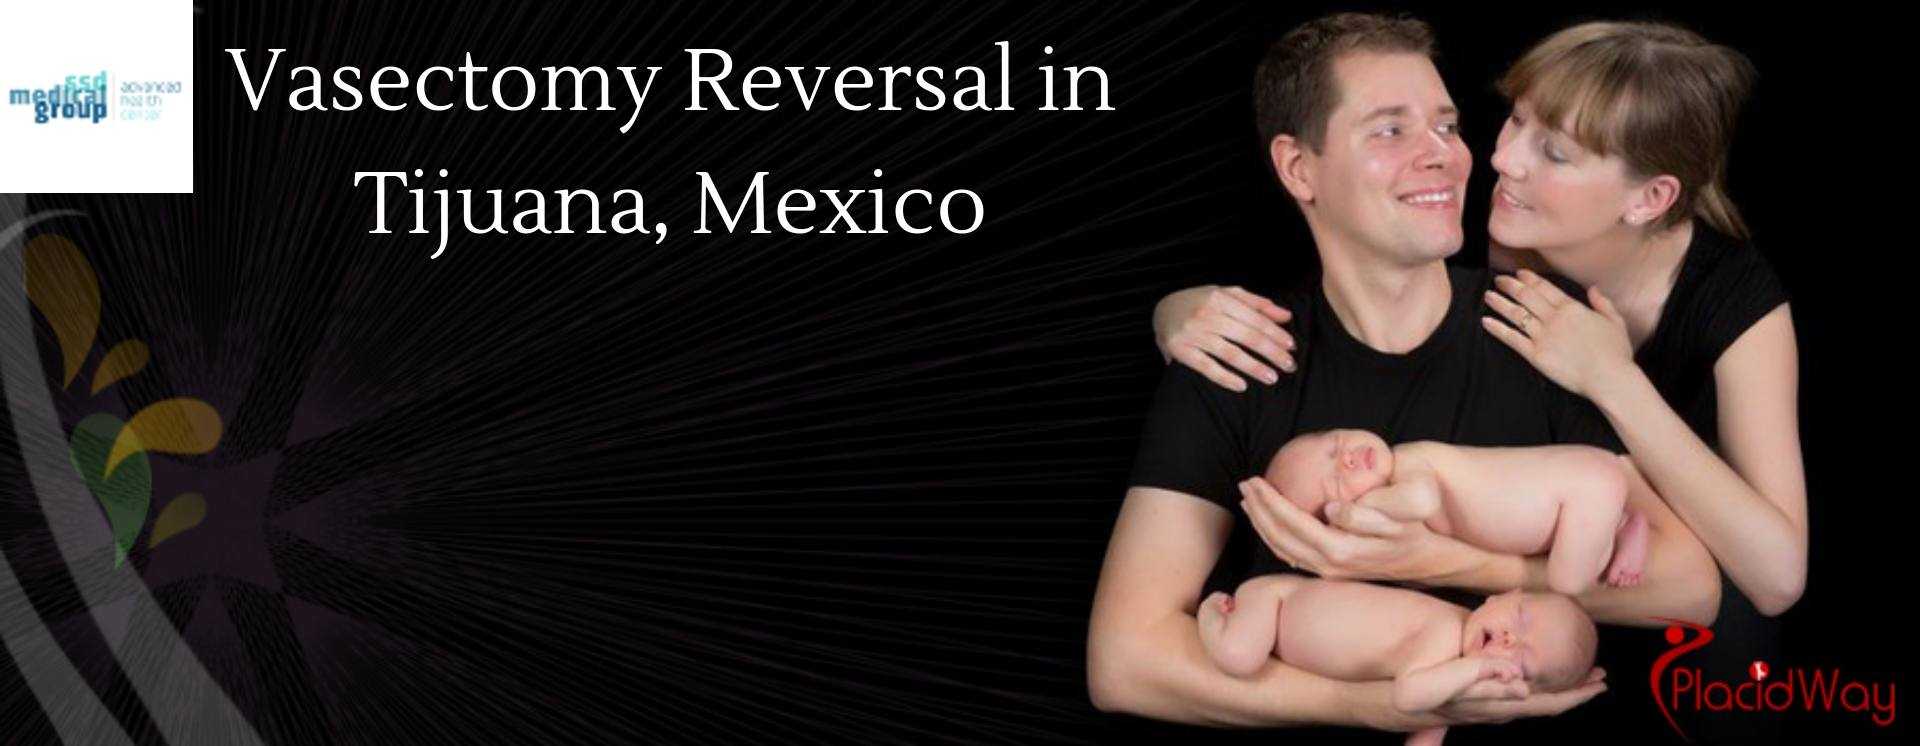 Vasectomy Reversal in Tijuana, Mexico